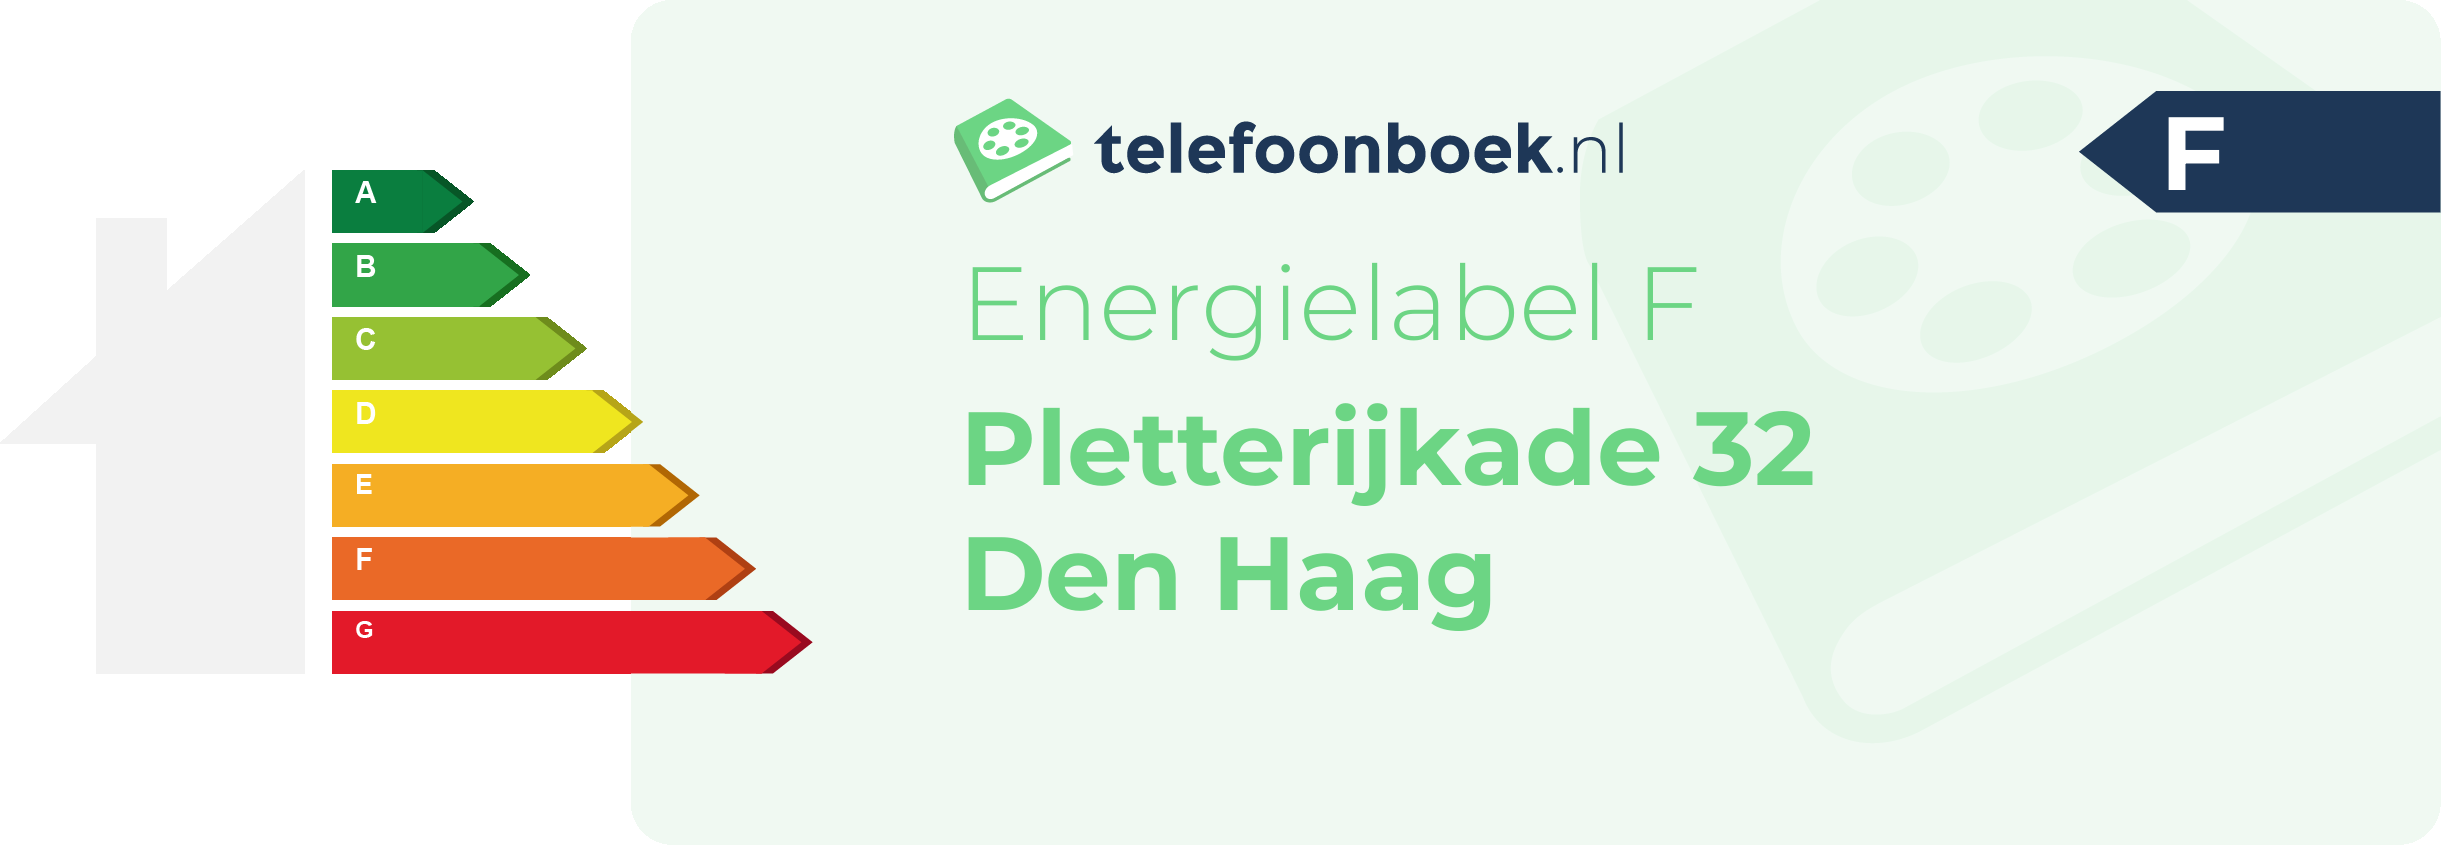 Energielabel Pletterijkade 32 Den Haag